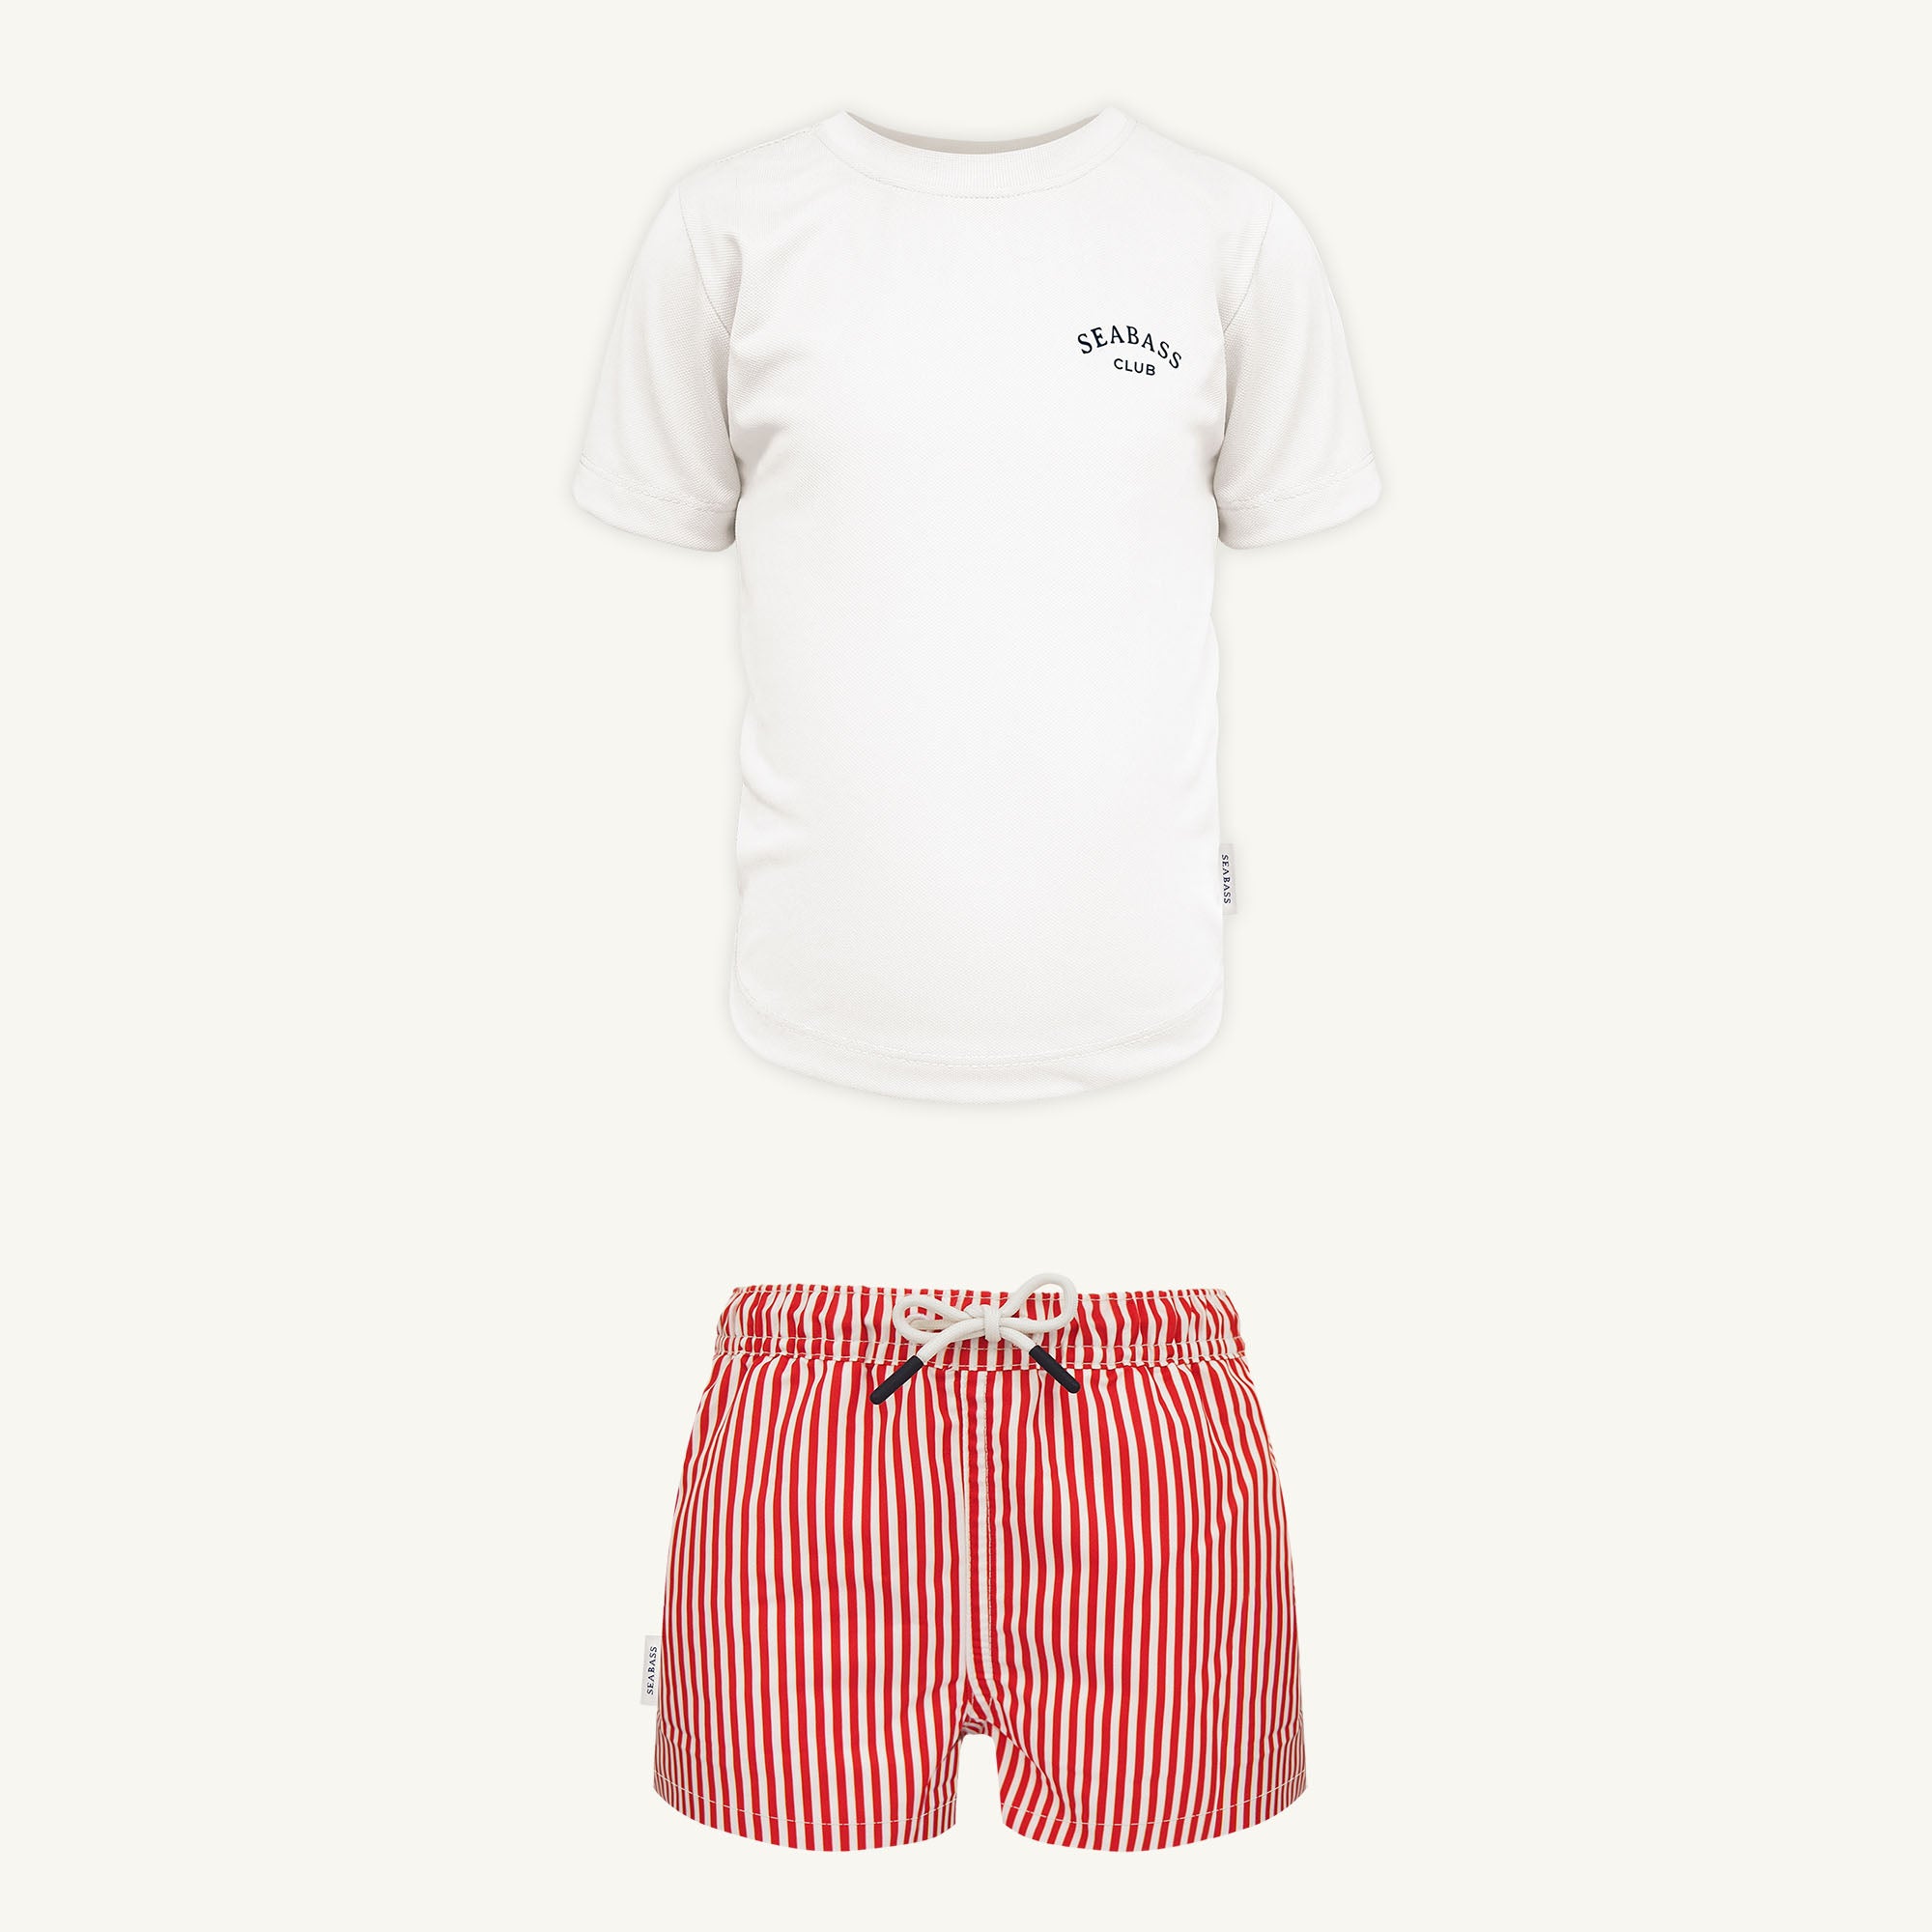 Conjunto de baño UV - Bañador Venice y Camiseta Blanca